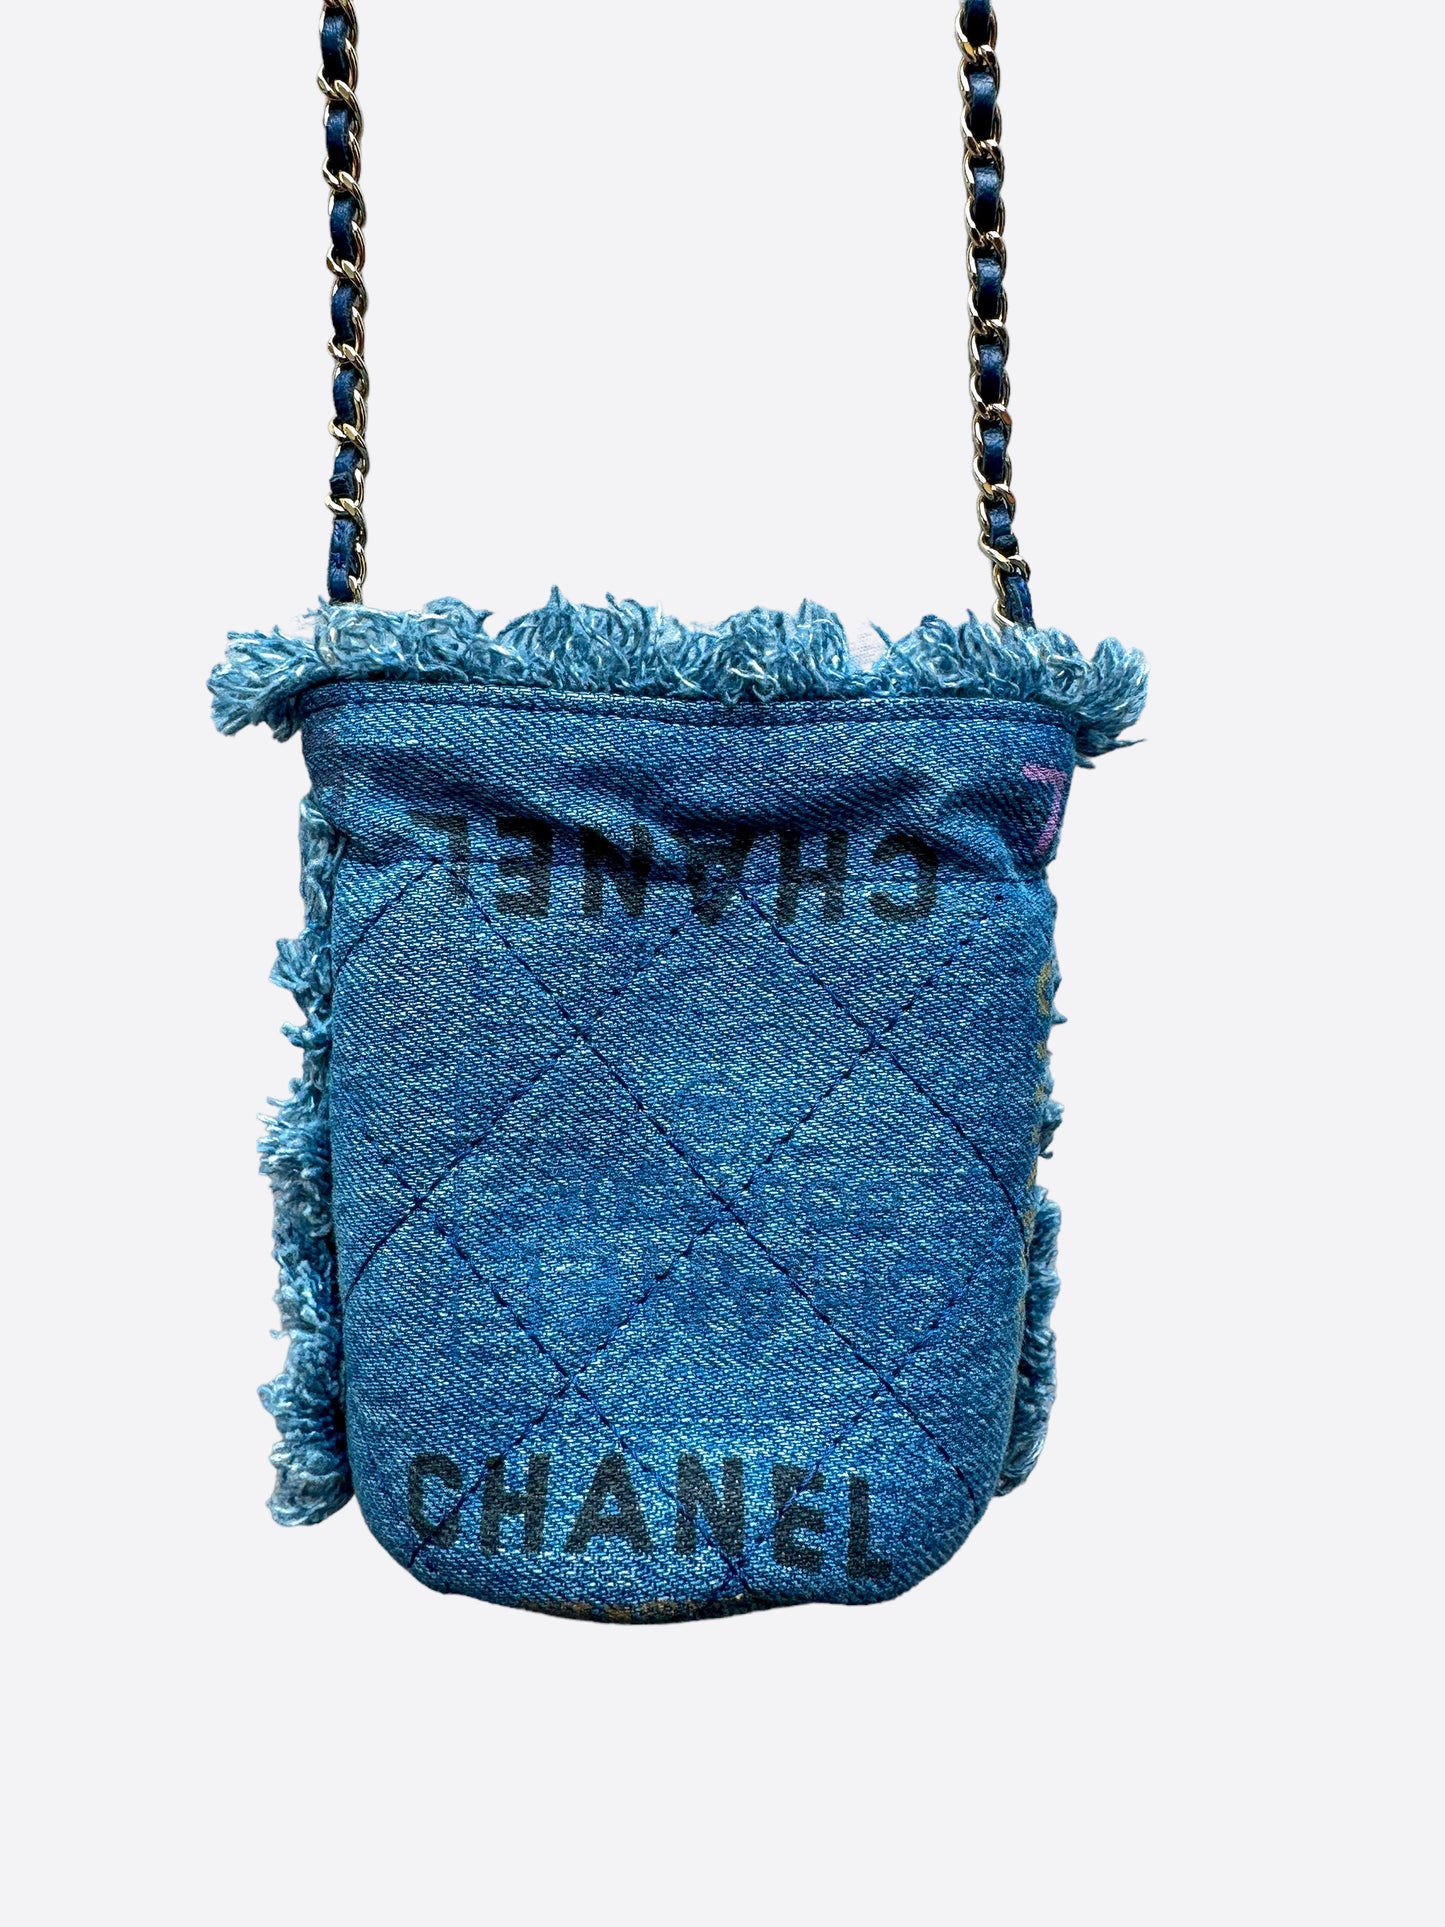 chanel blue bucket bag vintage